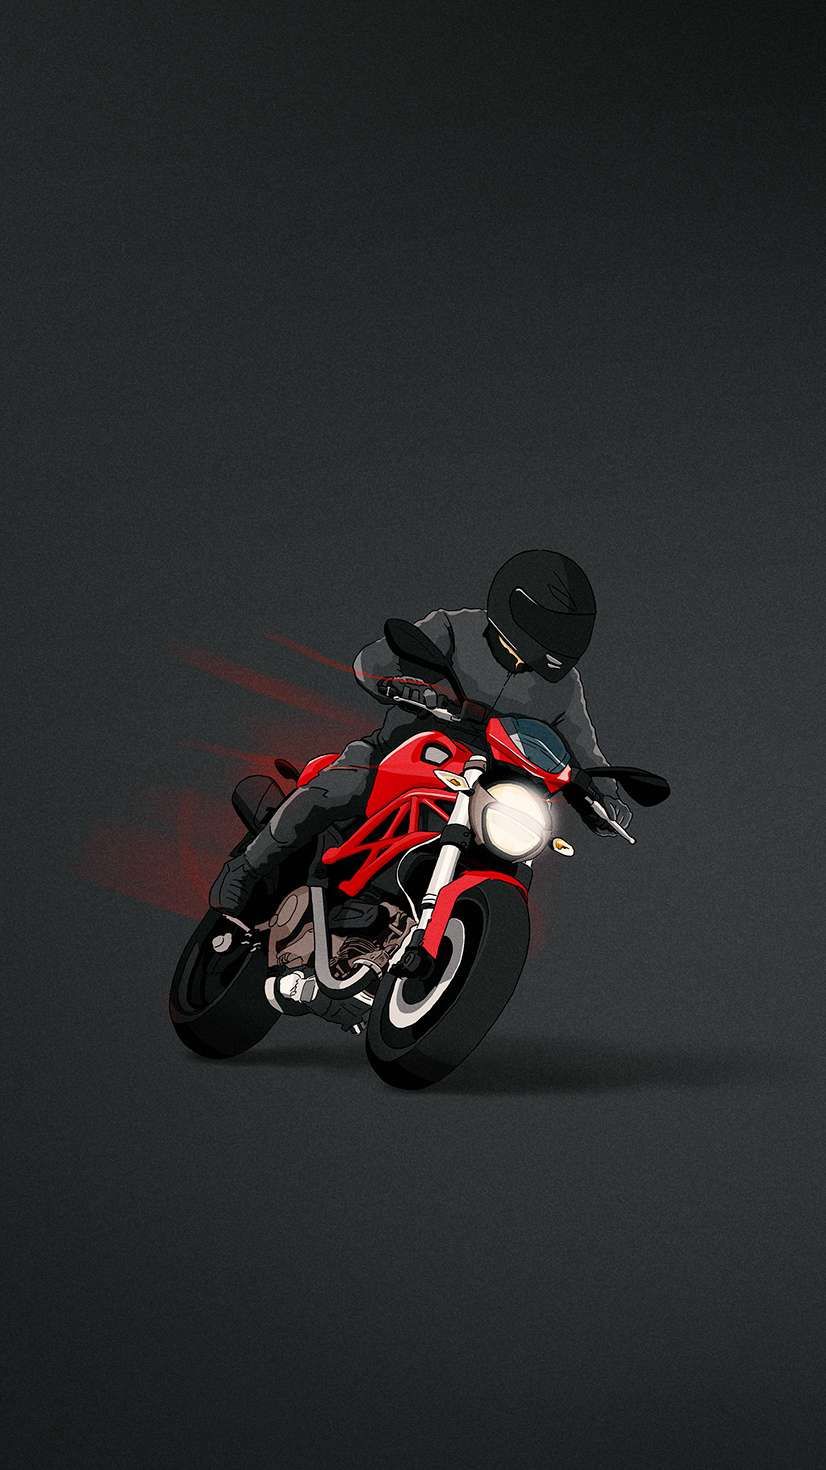 Ducati Monster. Bike photography, Ducati monster